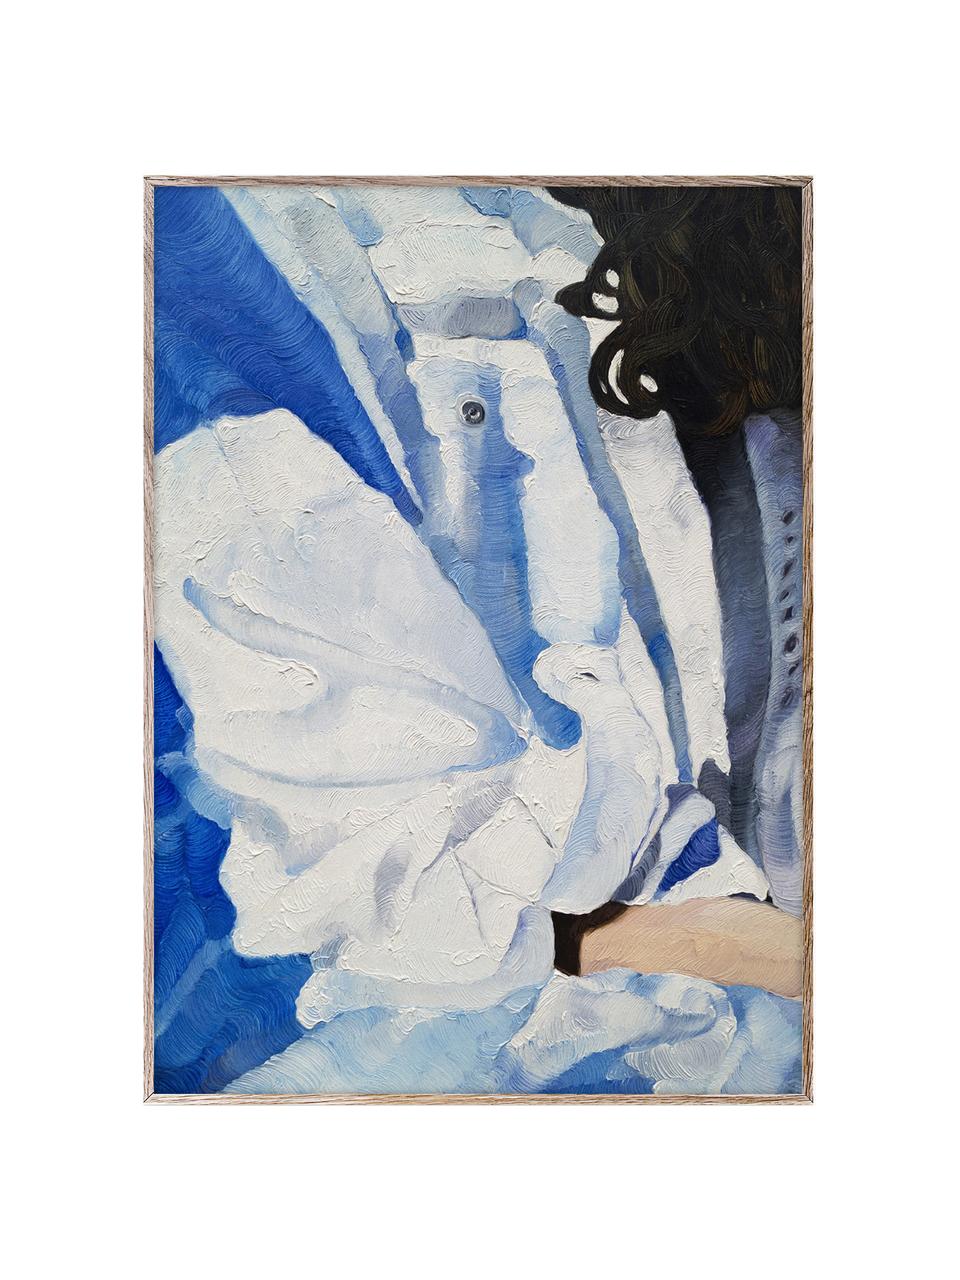 Plagát Detail of Eve, 210 g matný papier Hahnemühle, digitálna tlač s 10 farbami odolnými voči UV žiareniu, Tóny bielej a modrej, Š 30 x V 40 cm